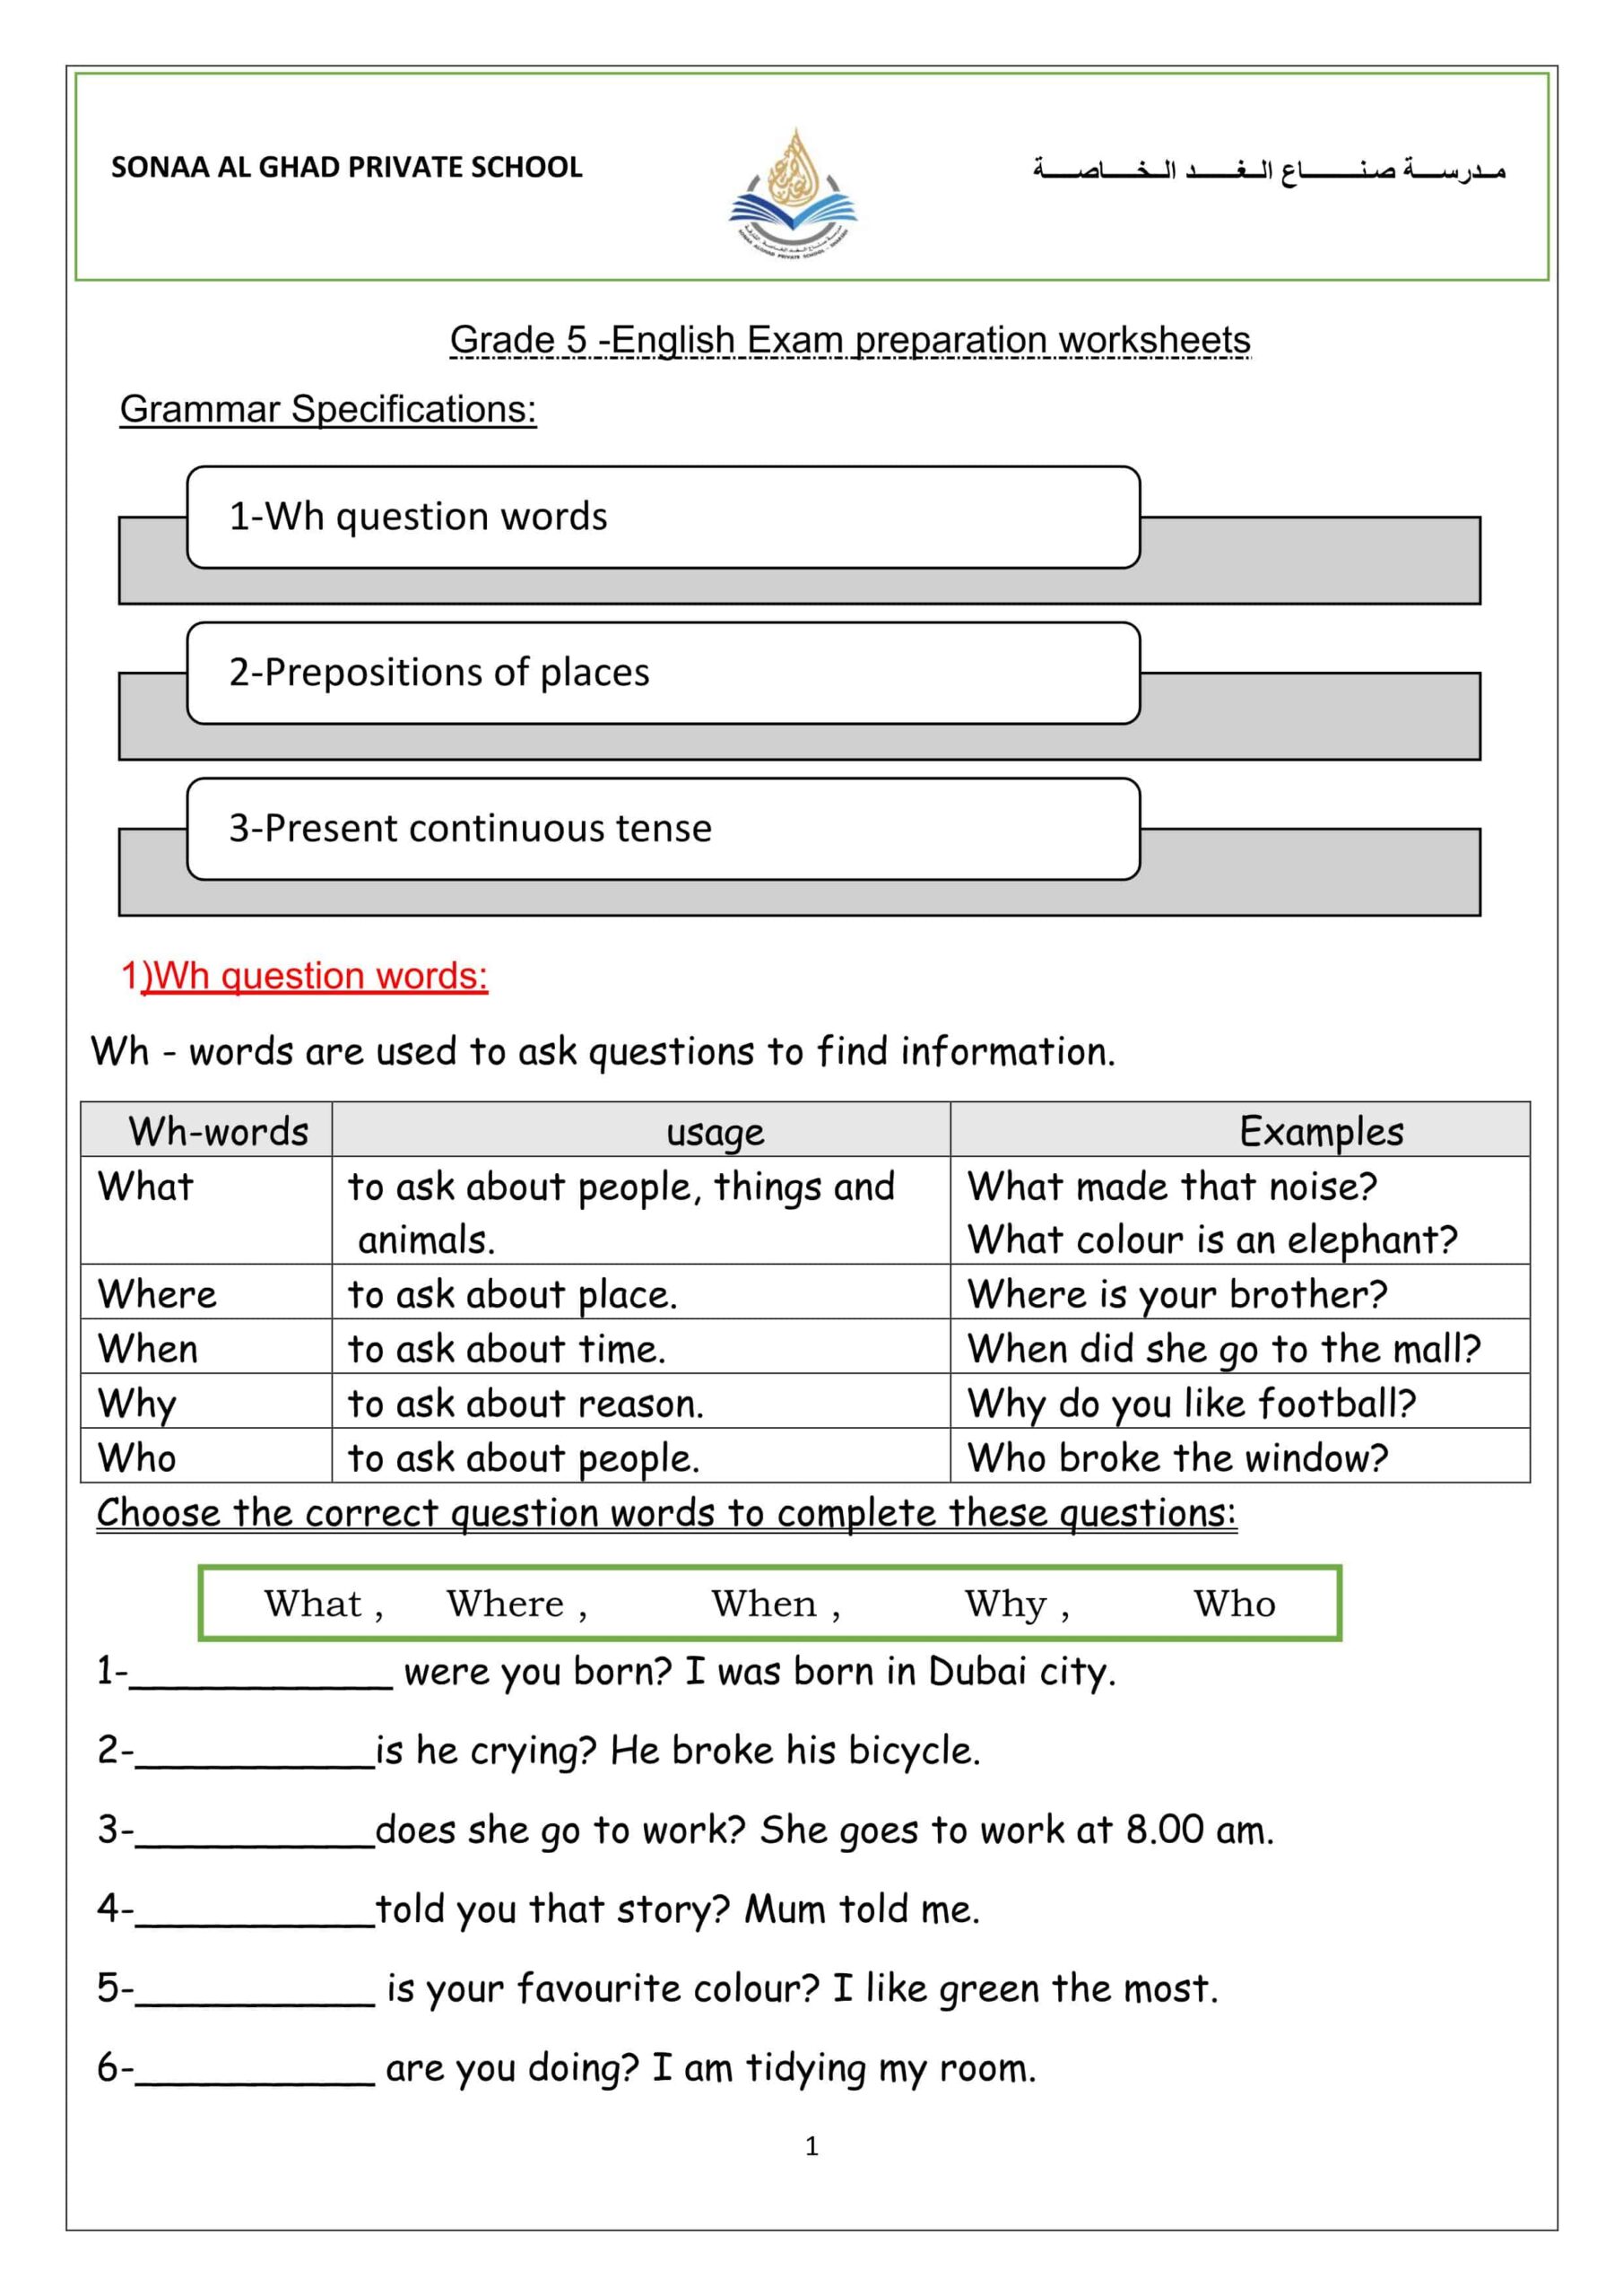 حل أوراق عمل Exam preparation worksheets اللغة الإنجليزية الصف الخامس 